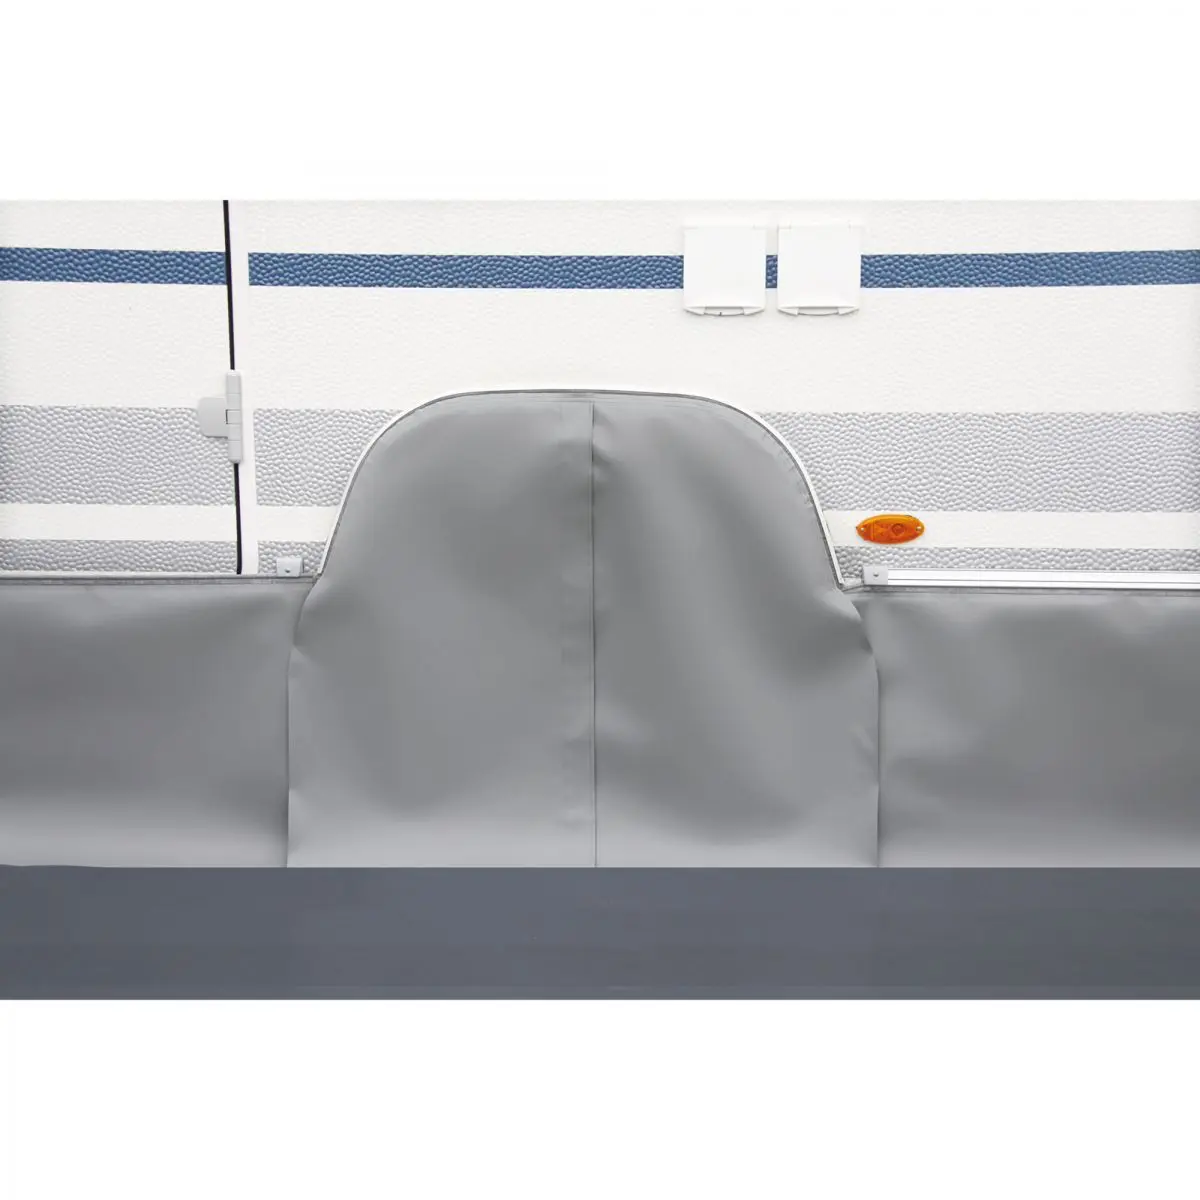 Kryt podbehov kolies pre tandemové karavany Fendt od roku výroby 2015